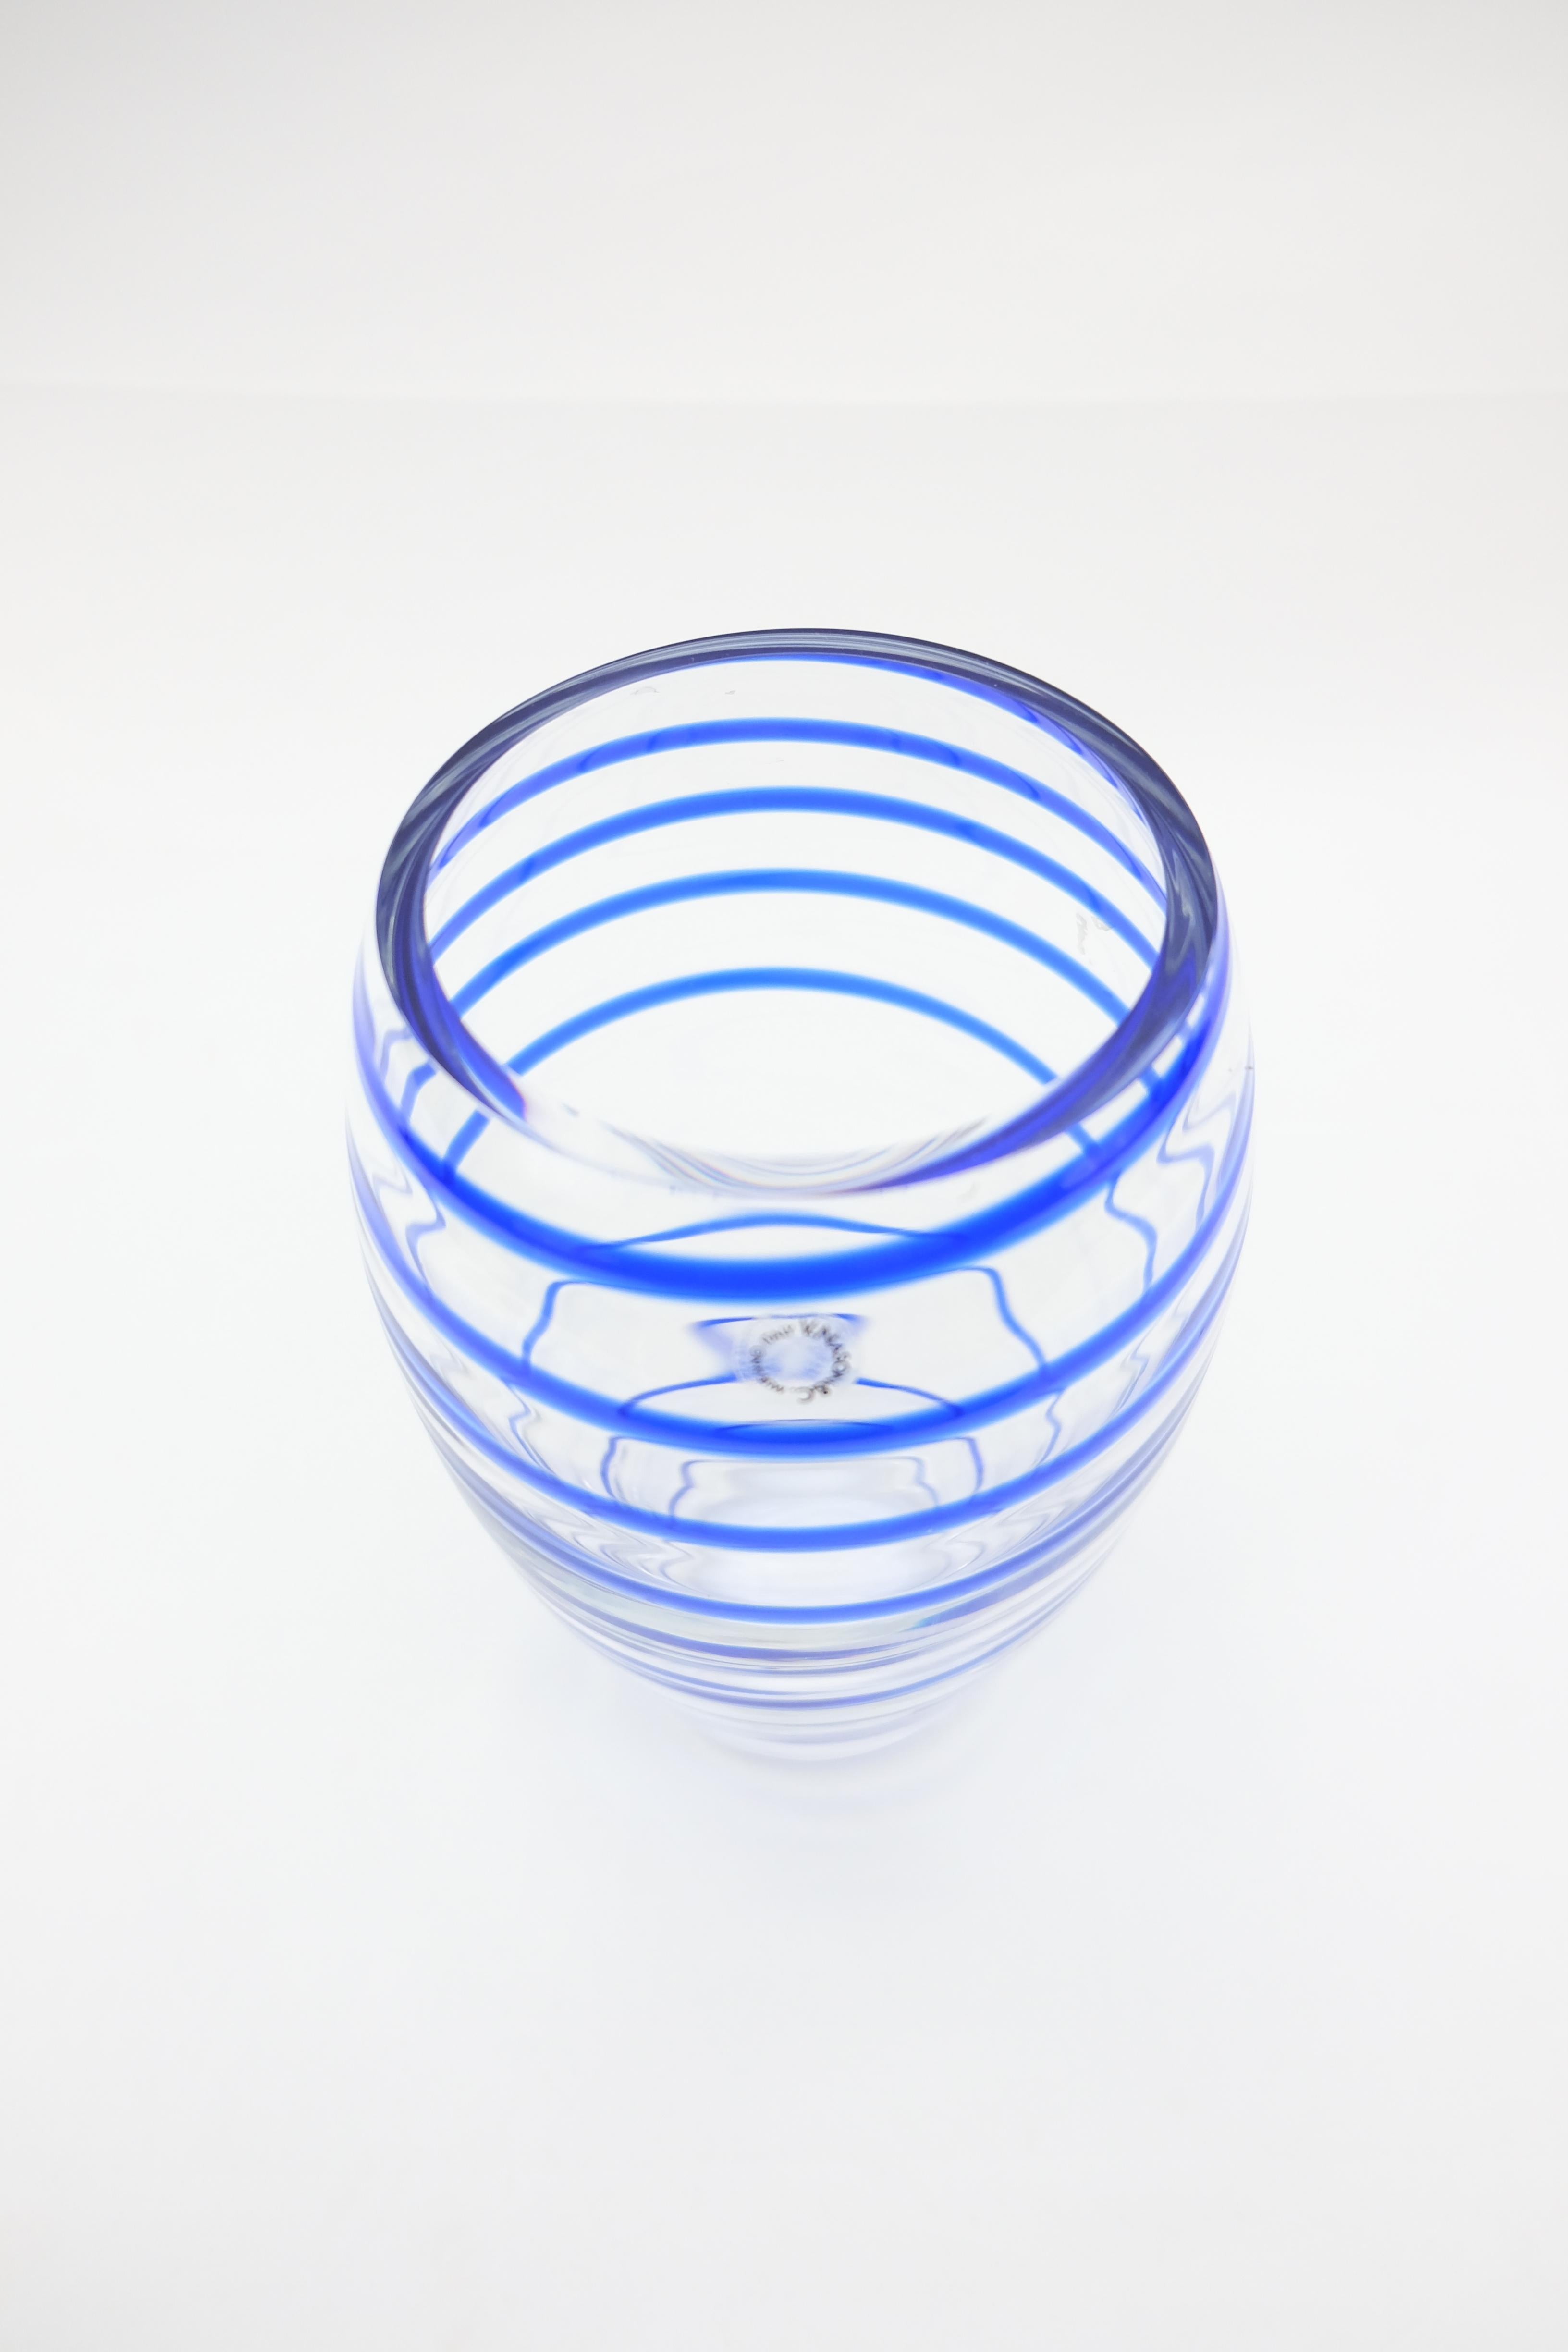 V. Nason & C. Italian Murano Glass Vase with Blue Spiral Stripe In Excellent Condition For Sale In Miami, FL